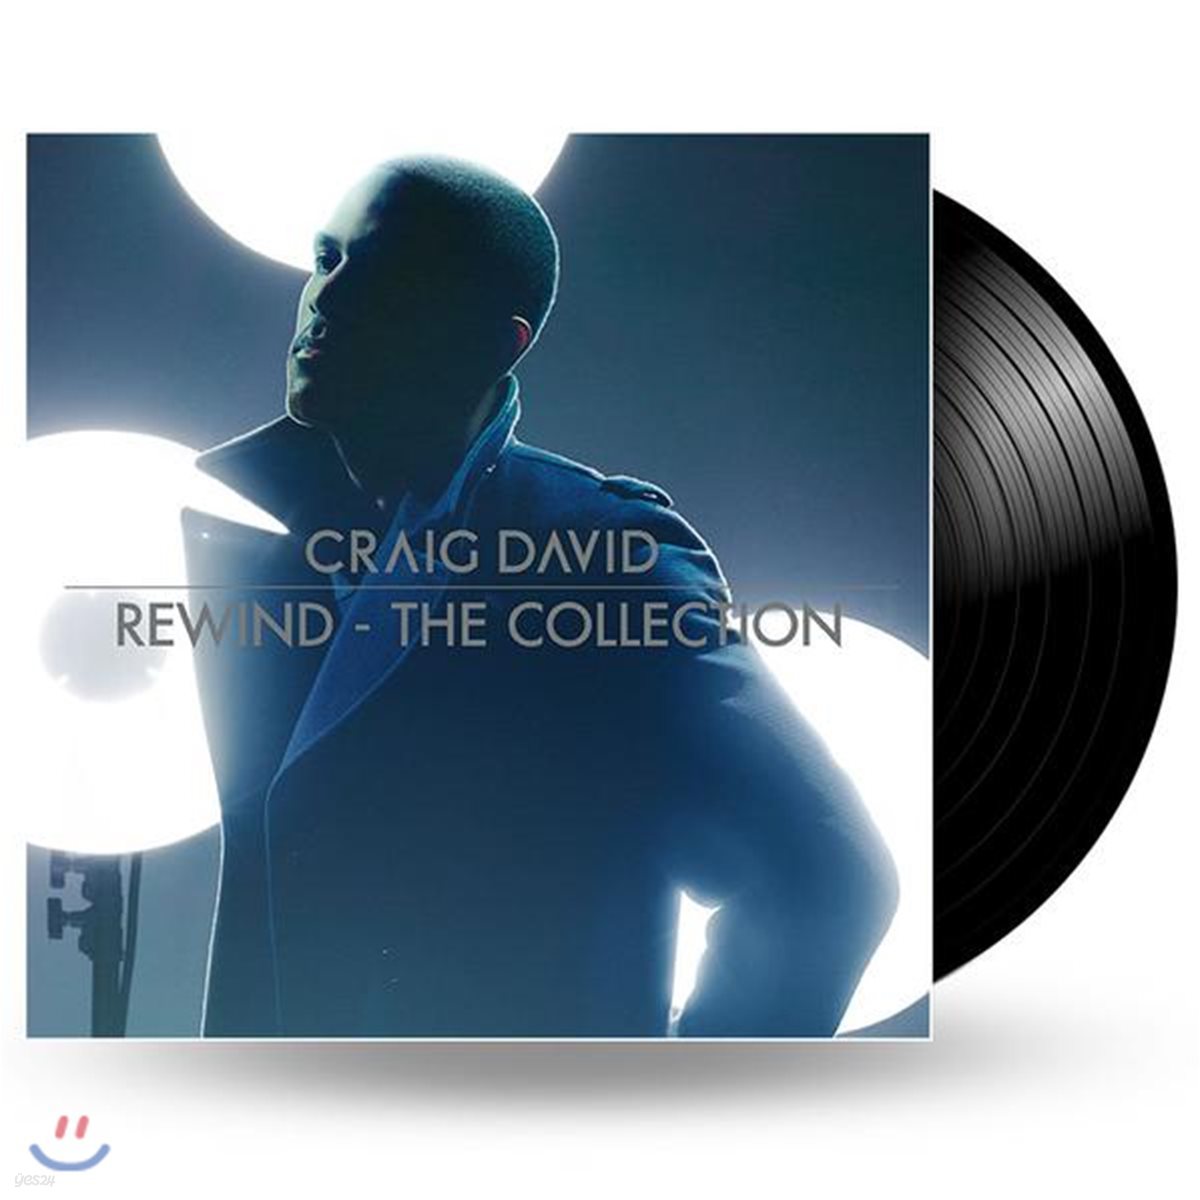 Craig David - Rewind: The Collection 크랙 데이빗 베스트 앨범 [2 LP]